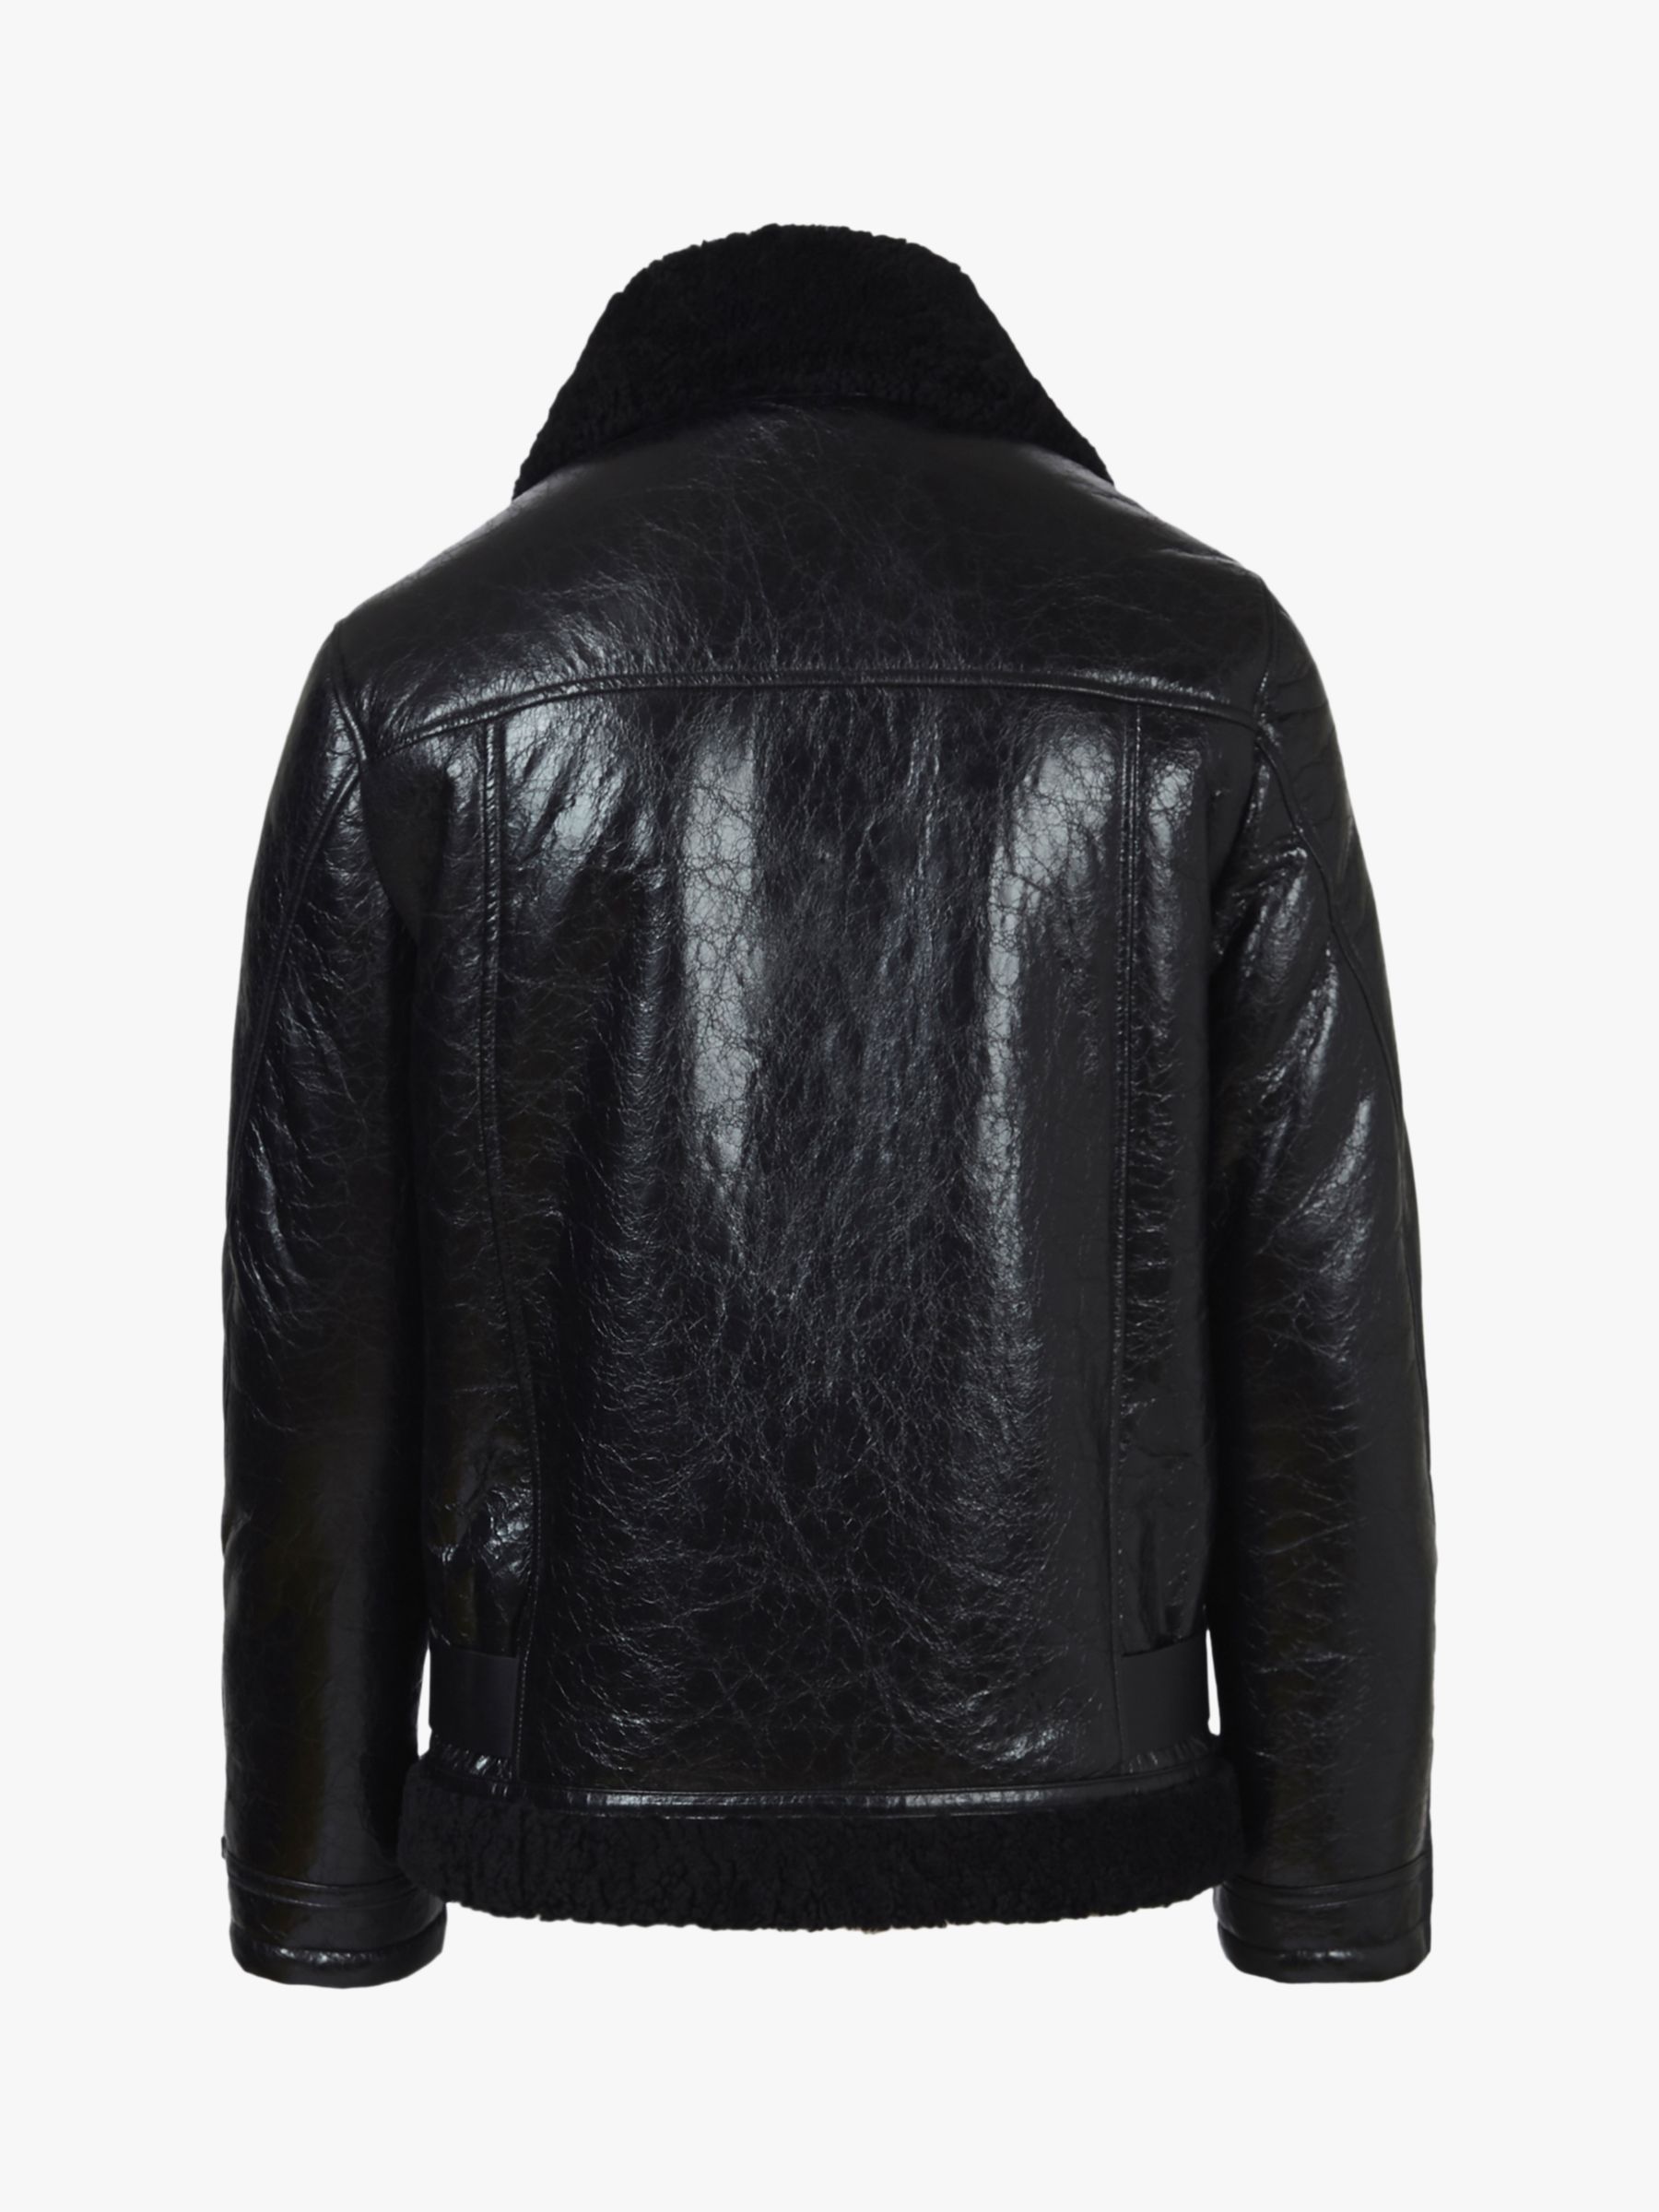 AllSaints Felix Shearling Leather Jacket, Black, XXL